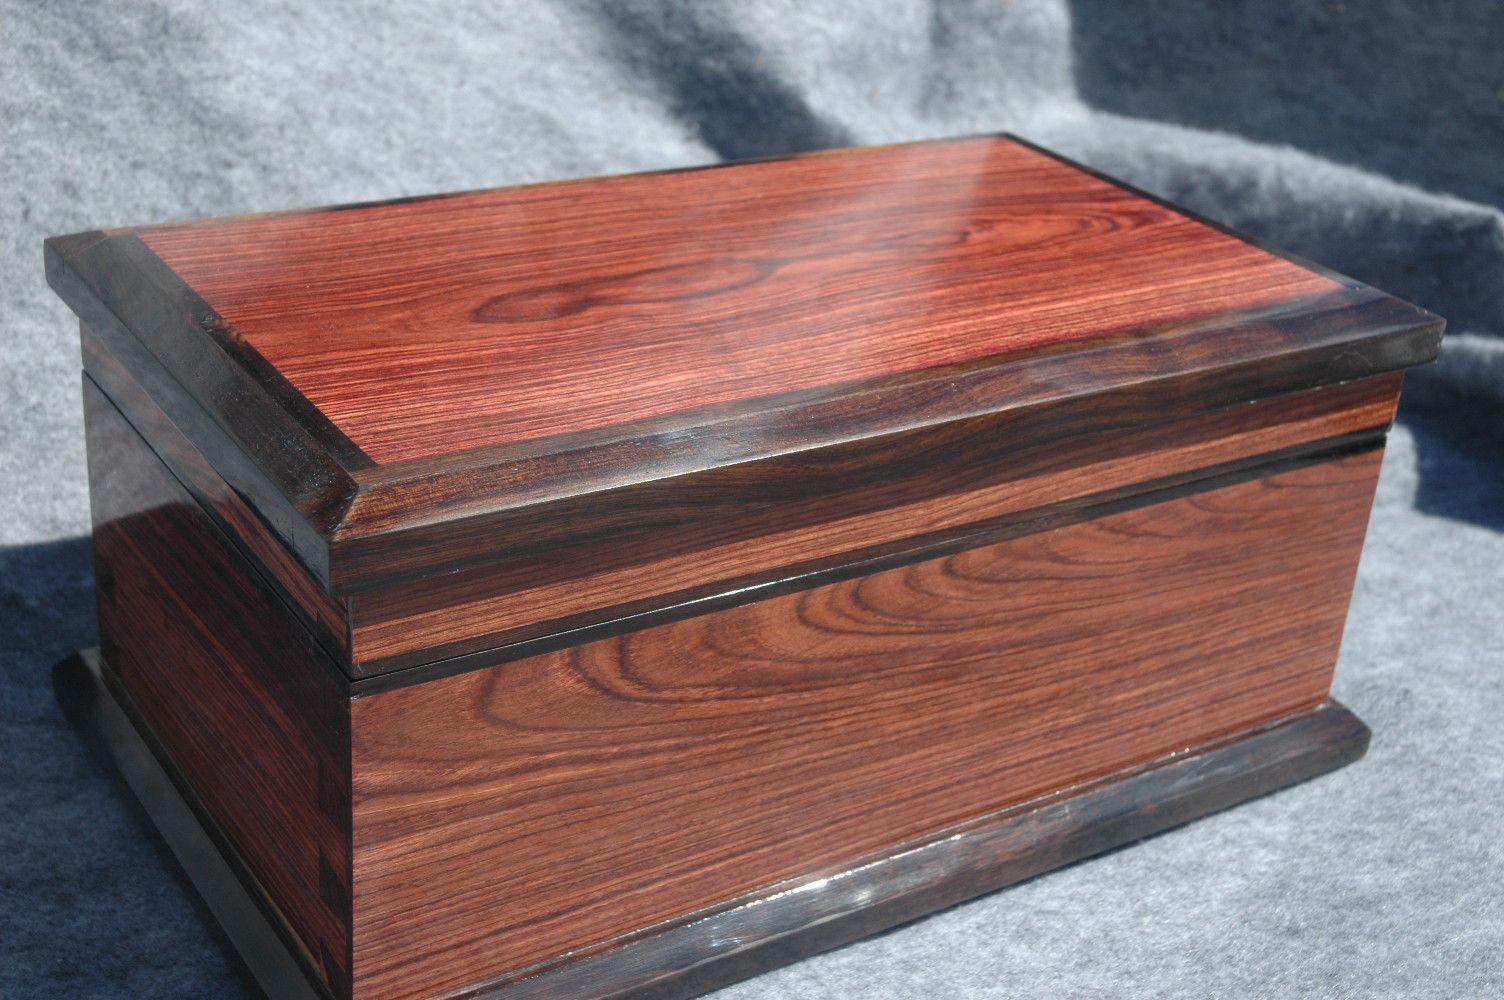 custom handcrafted wood box kingwood ebony trim and tray